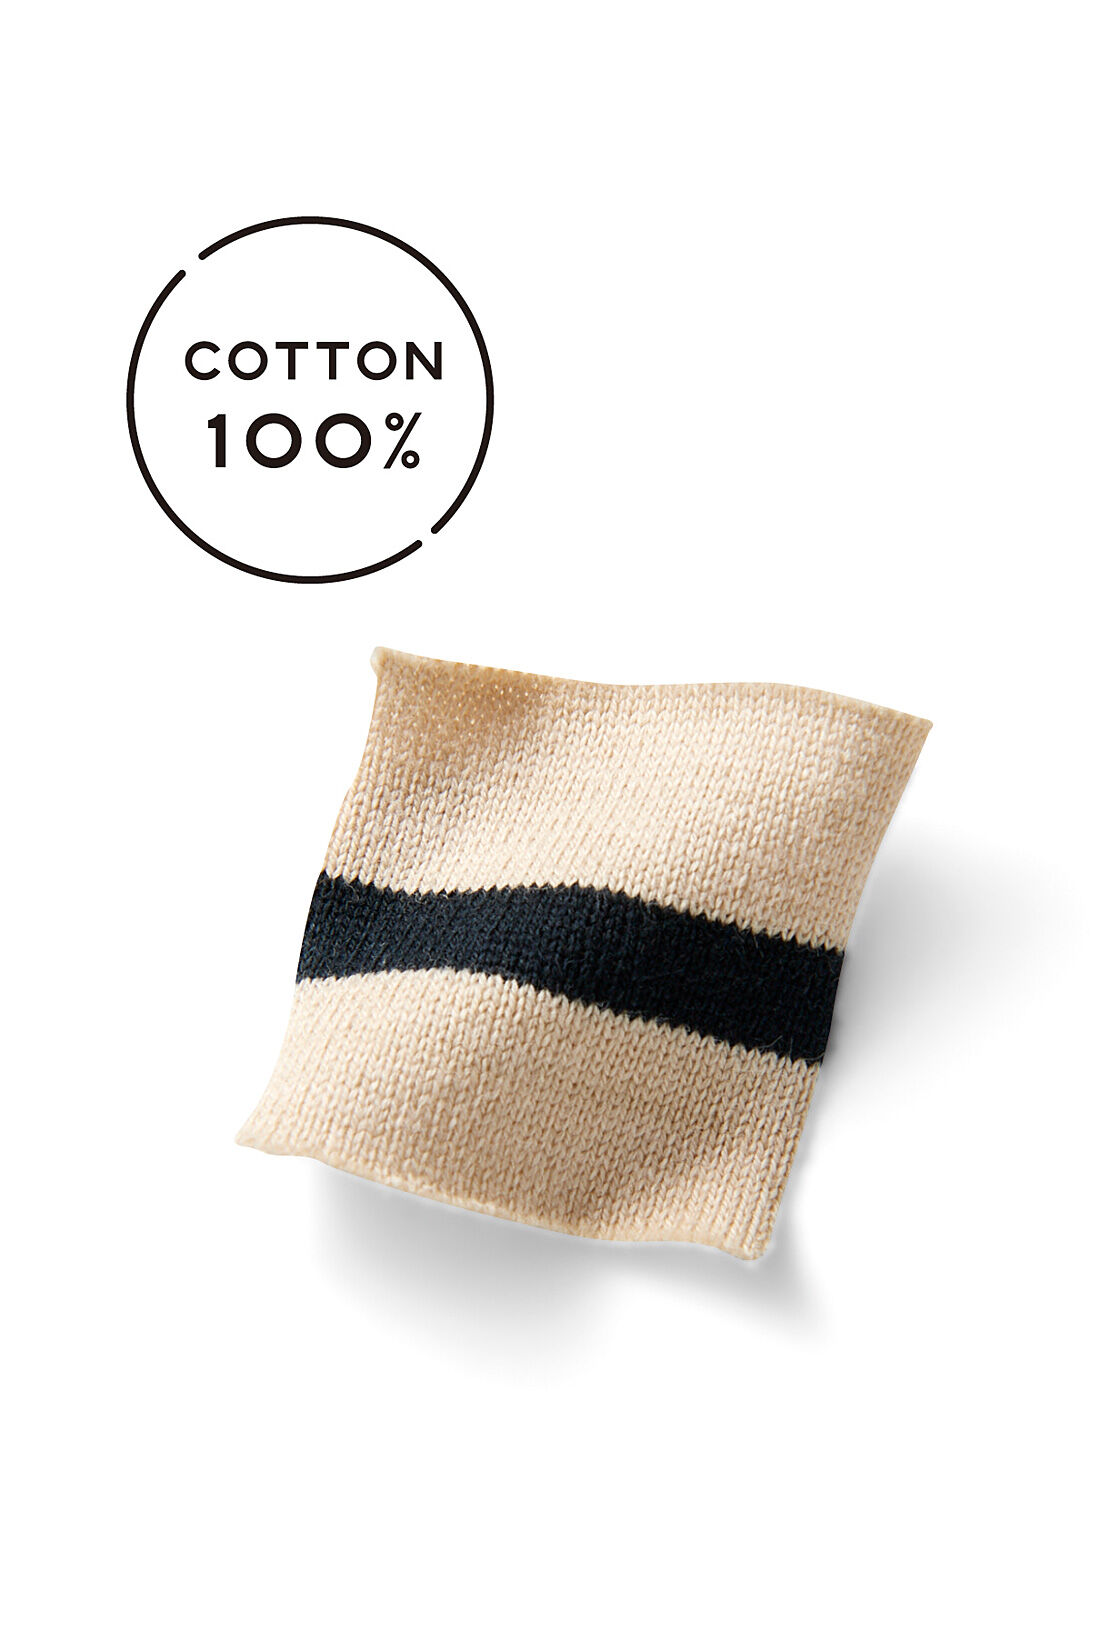 Live in  comfort|Live love cotton（R）プロジェクト　リブ イン コンフォート　インドの刺しゅうガールズとつくった　つながるフラワー　オーガニックコットンボーダートップス〈ベージュ×ブラック〉|オーガニックコットン100%の天じくボーダー素材。 薄すぎず厚すぎずほどよい厚みです。